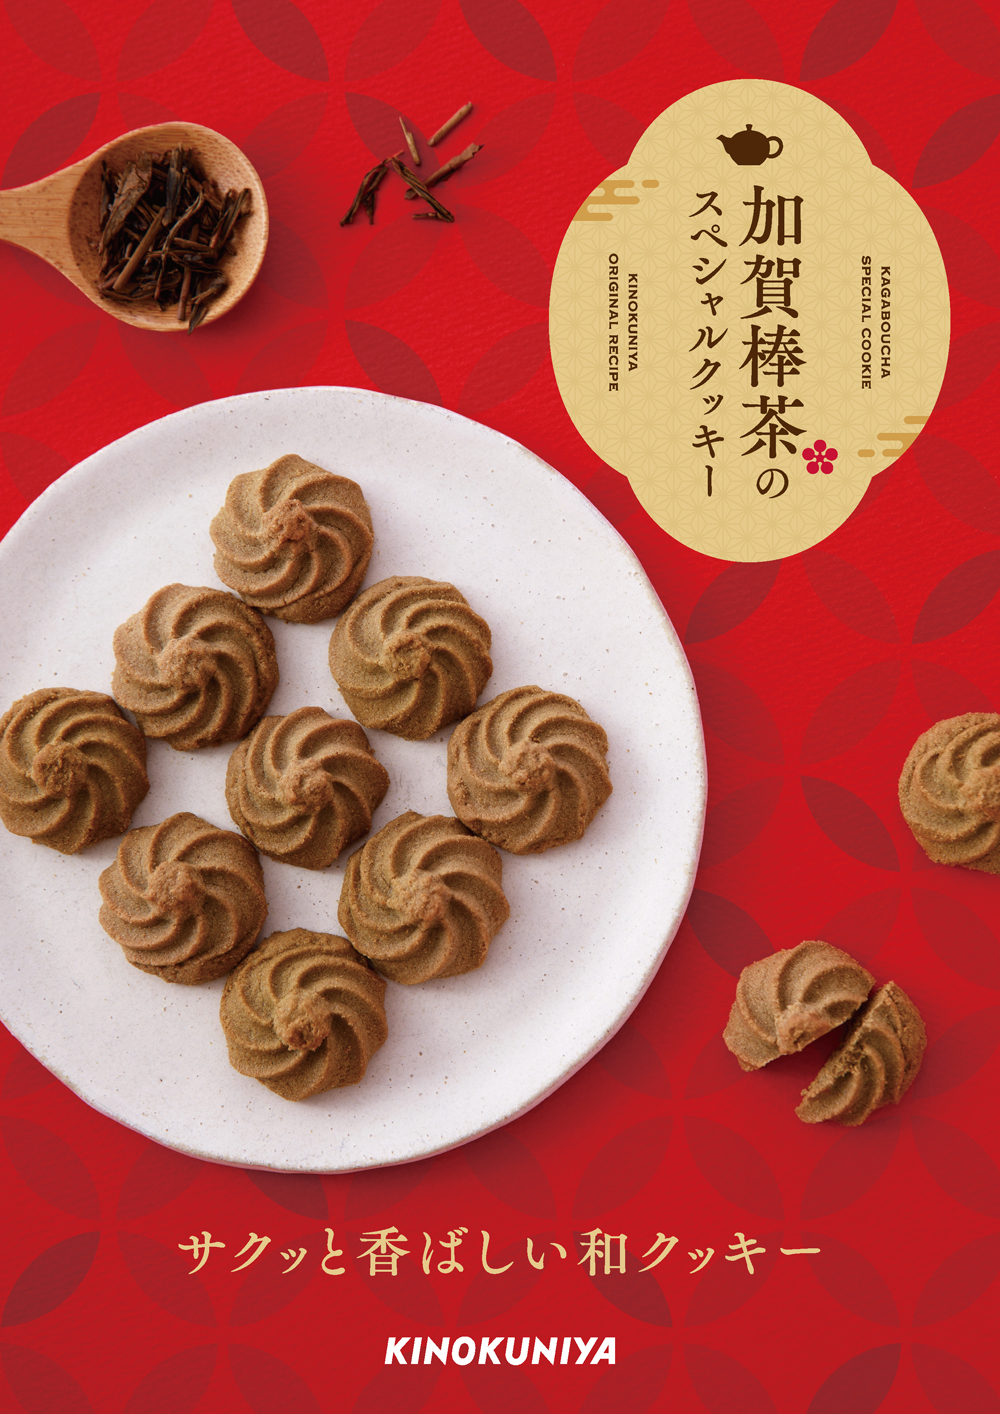 香ばしい上品な香りの金沢加賀棒茶を使用した自家製クッキー「加賀棒茶のスペシャルクッキー」が新登場のサブ画像2